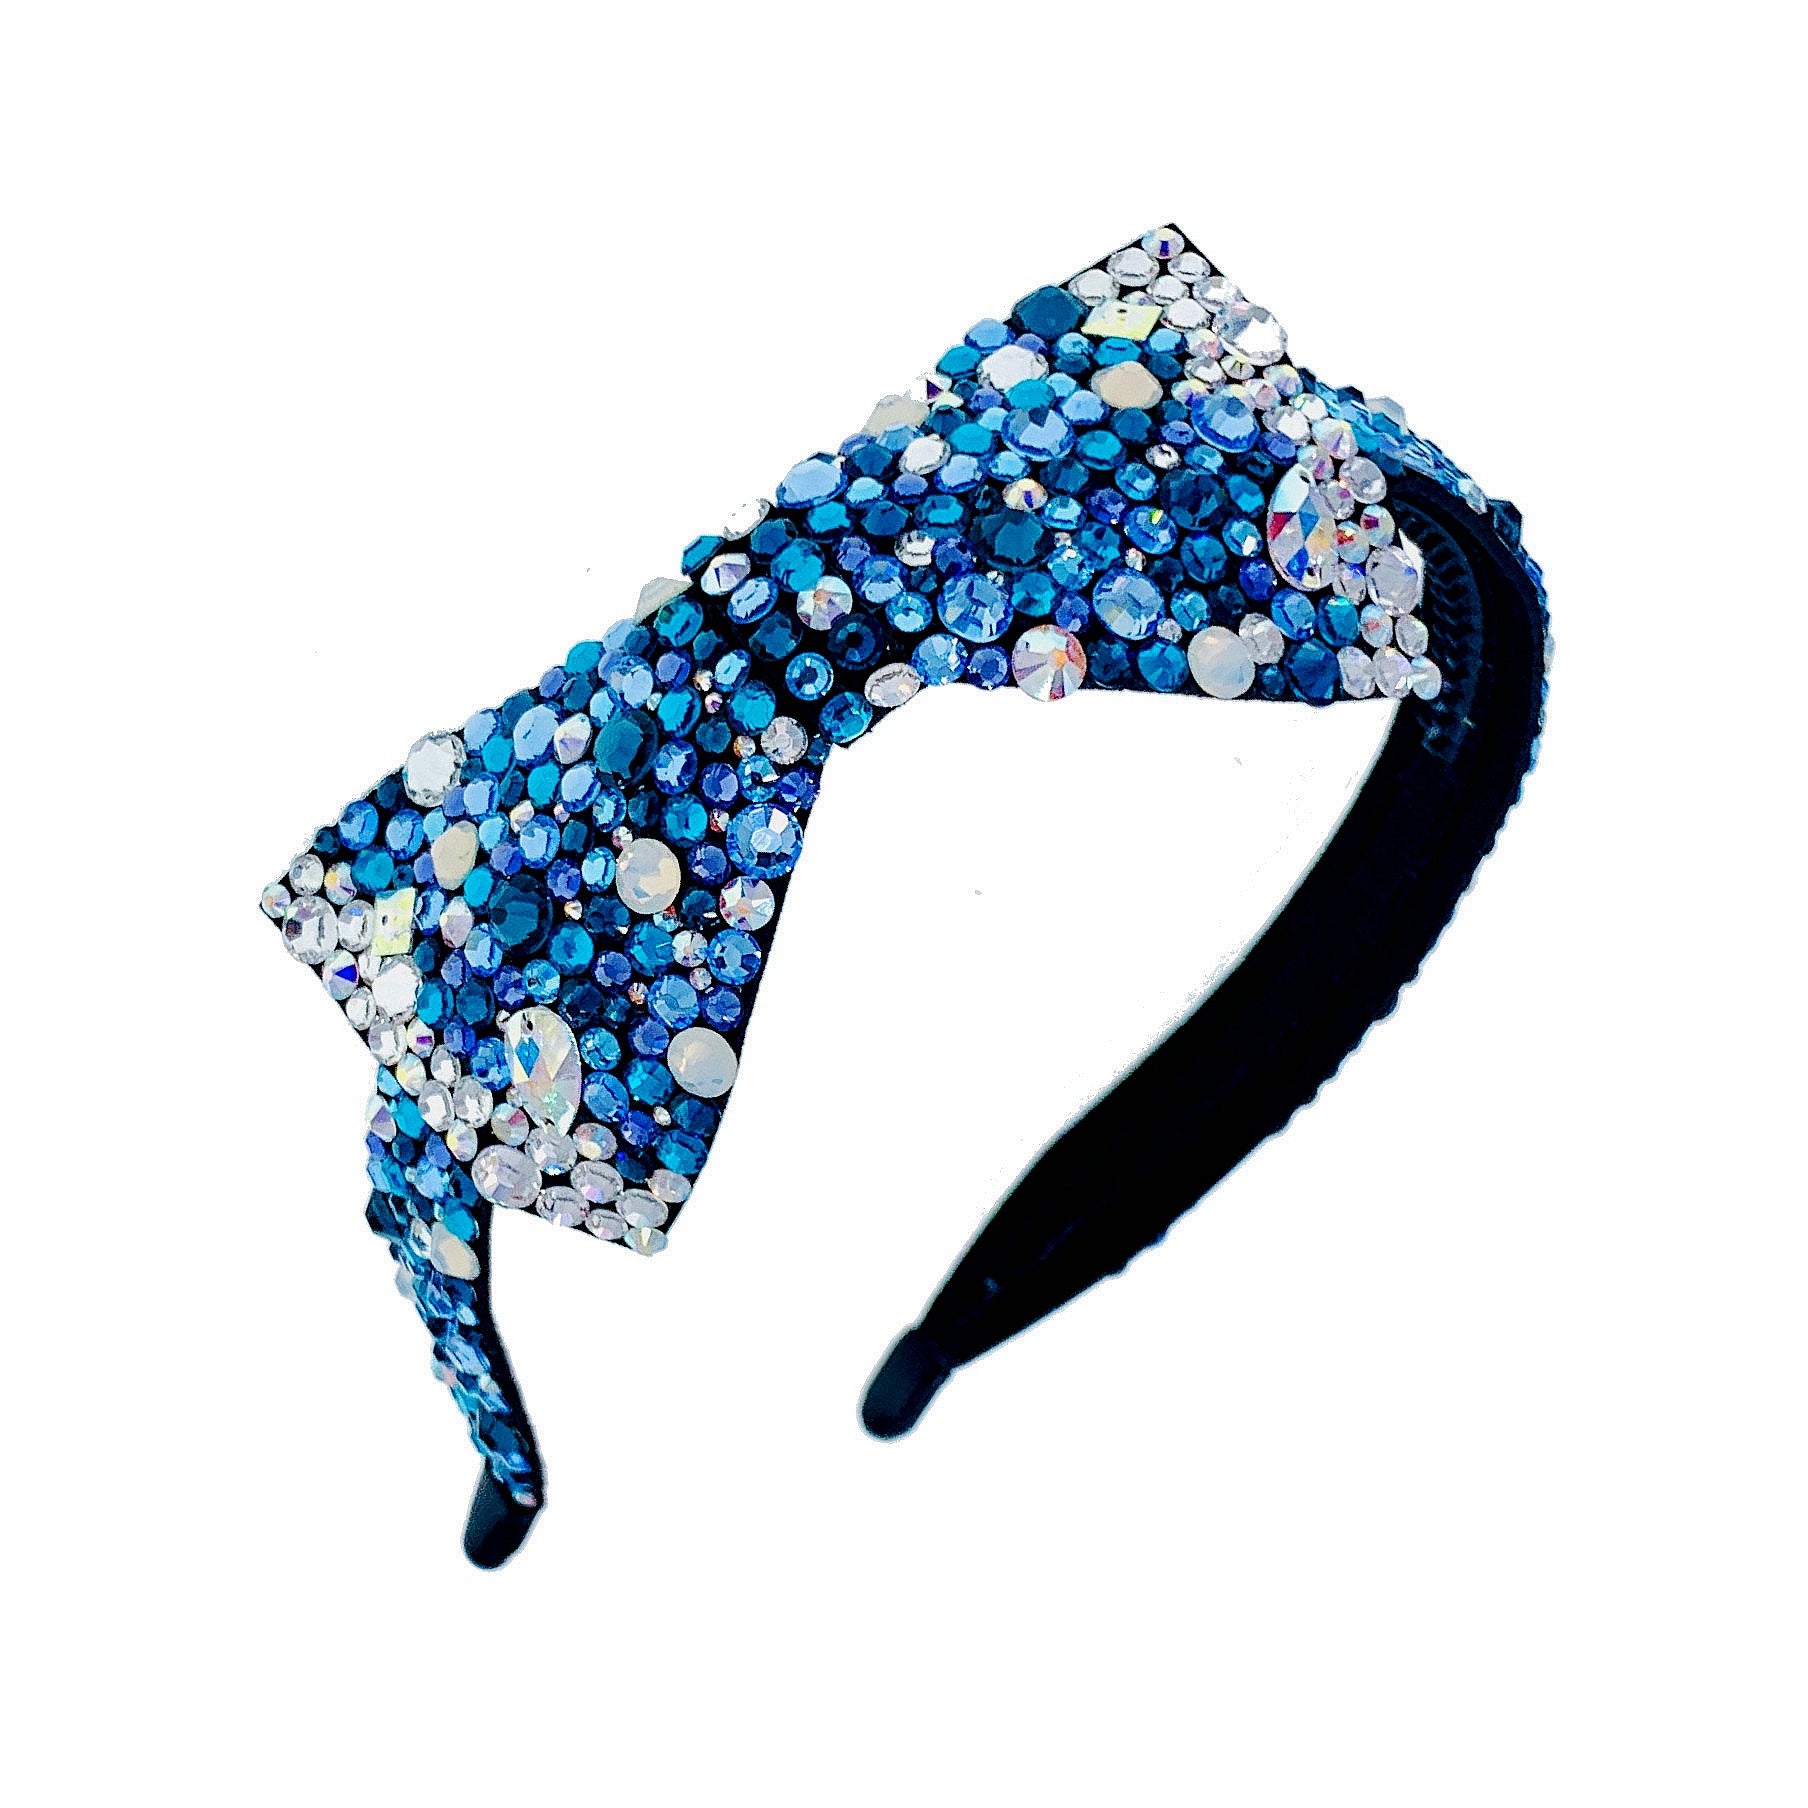 Debora Dreamy Bow Headband Handmade use Swarovski Crystals Hairband, Headband - MOGHANT